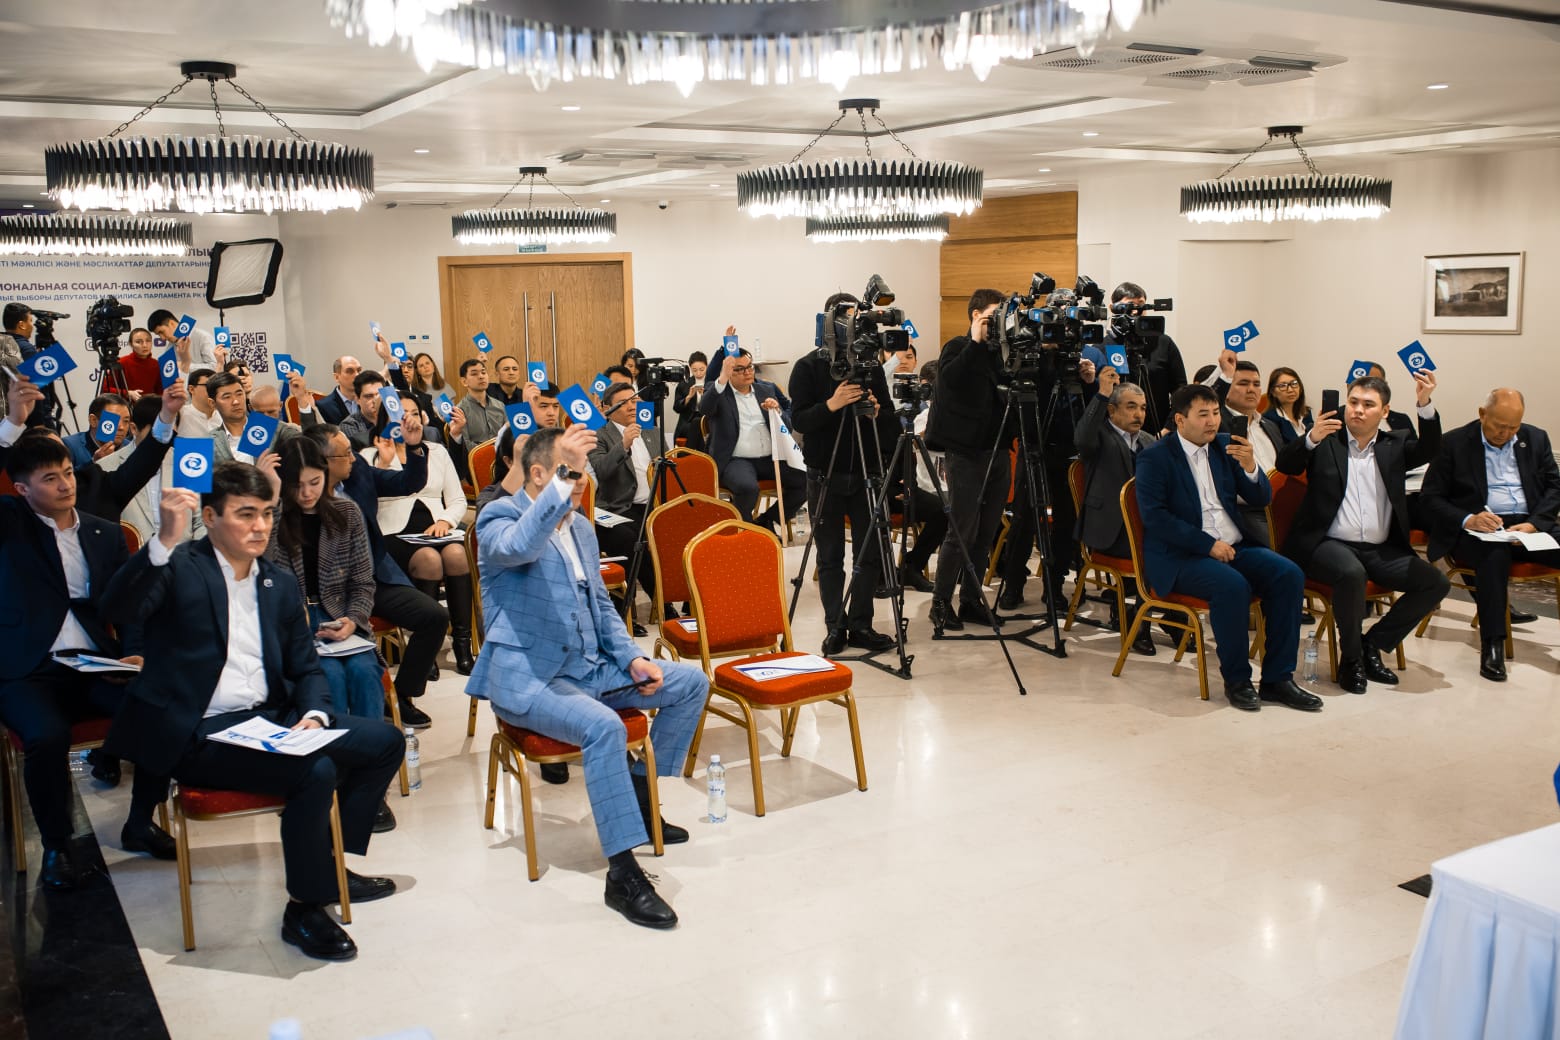 Съезд Национальной социал-демократической партии собрал 46 делегатов со всех регионов Казахстана. Фото: страница Национальной социал-демократической партии в Facebook.